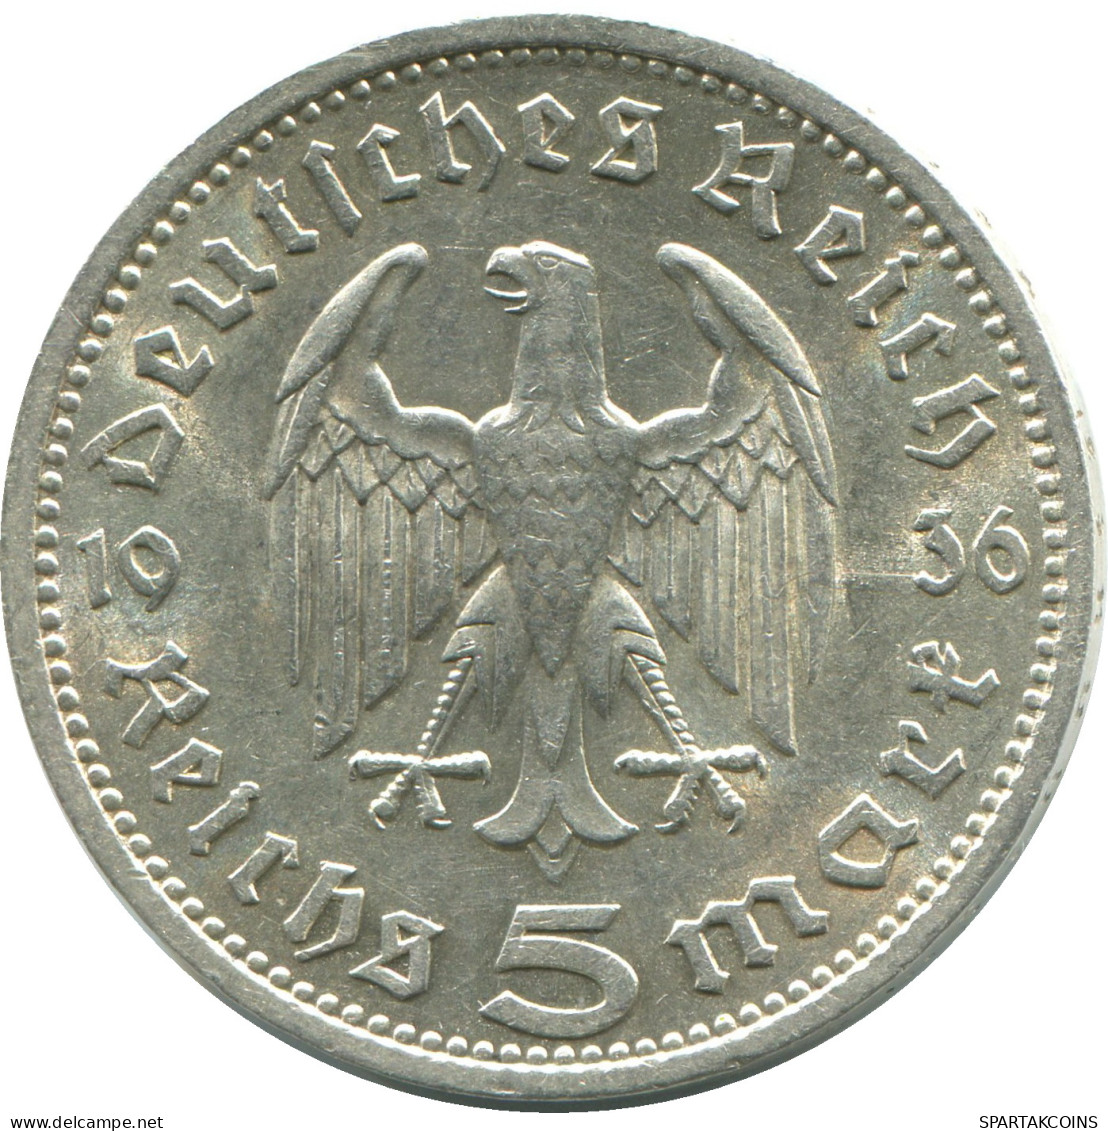 5 REICHSMARK 1936 A PLATA ALEMANIA Moneda GERMANY #DE10363.5.E - 5 Reichsmark